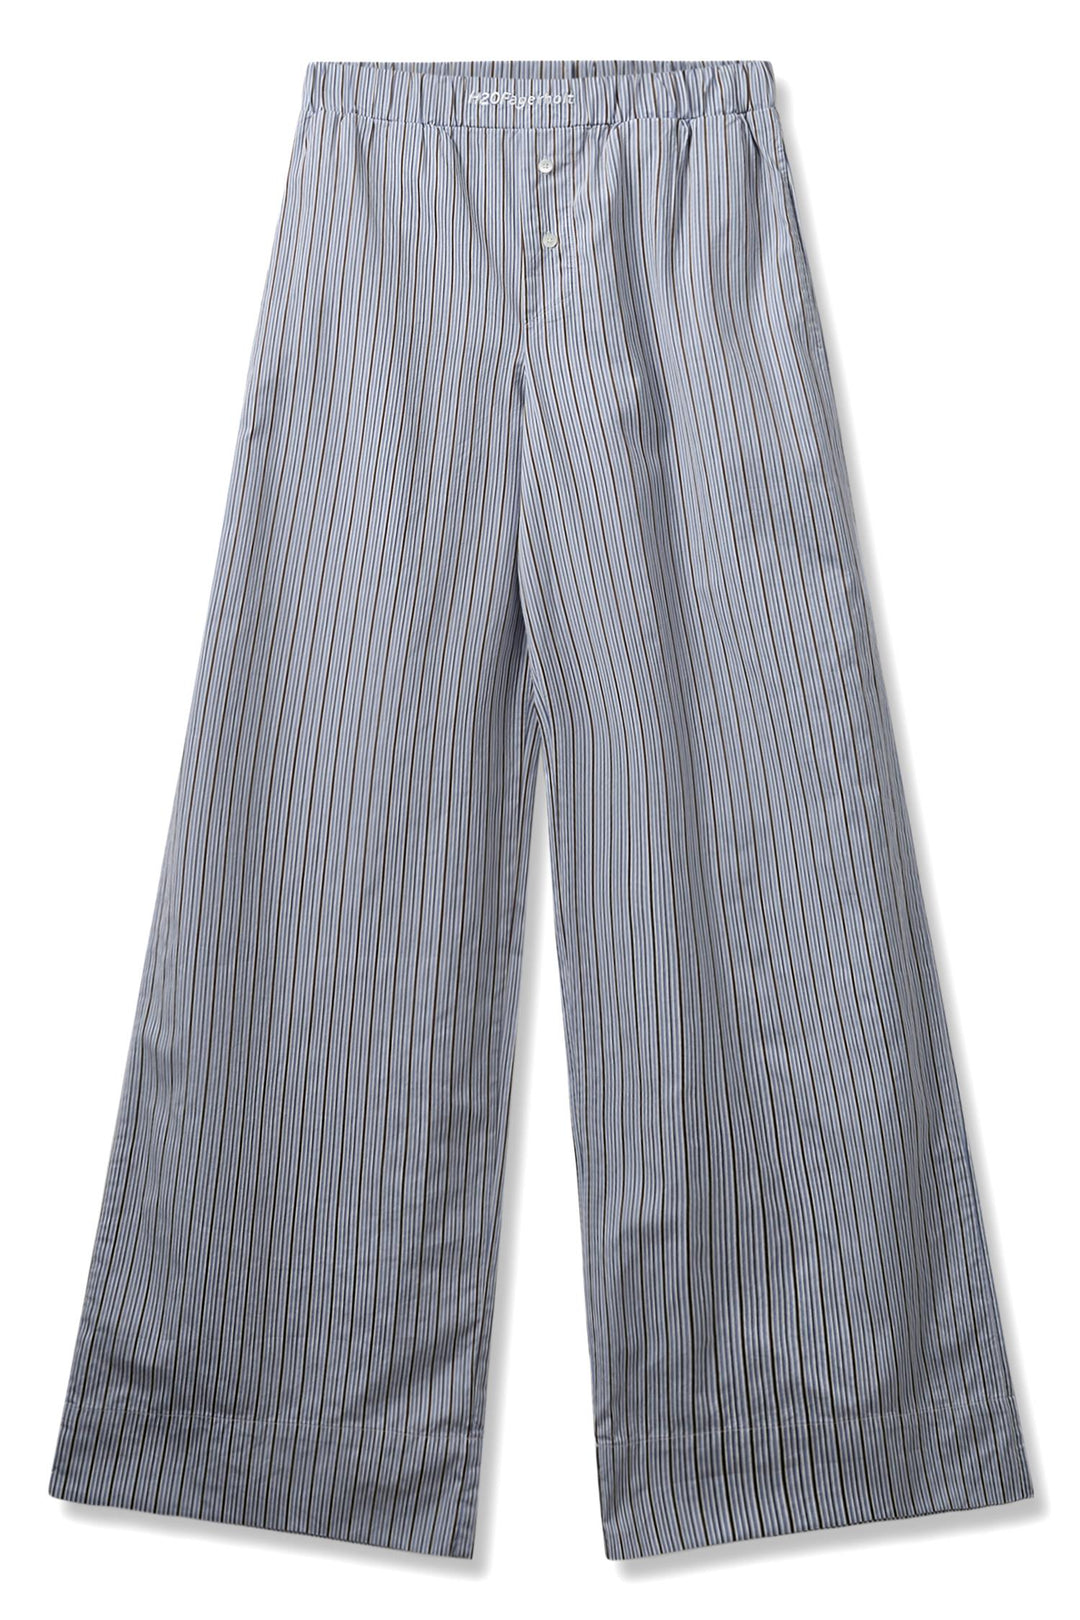 PJ Pants Blue Stripe